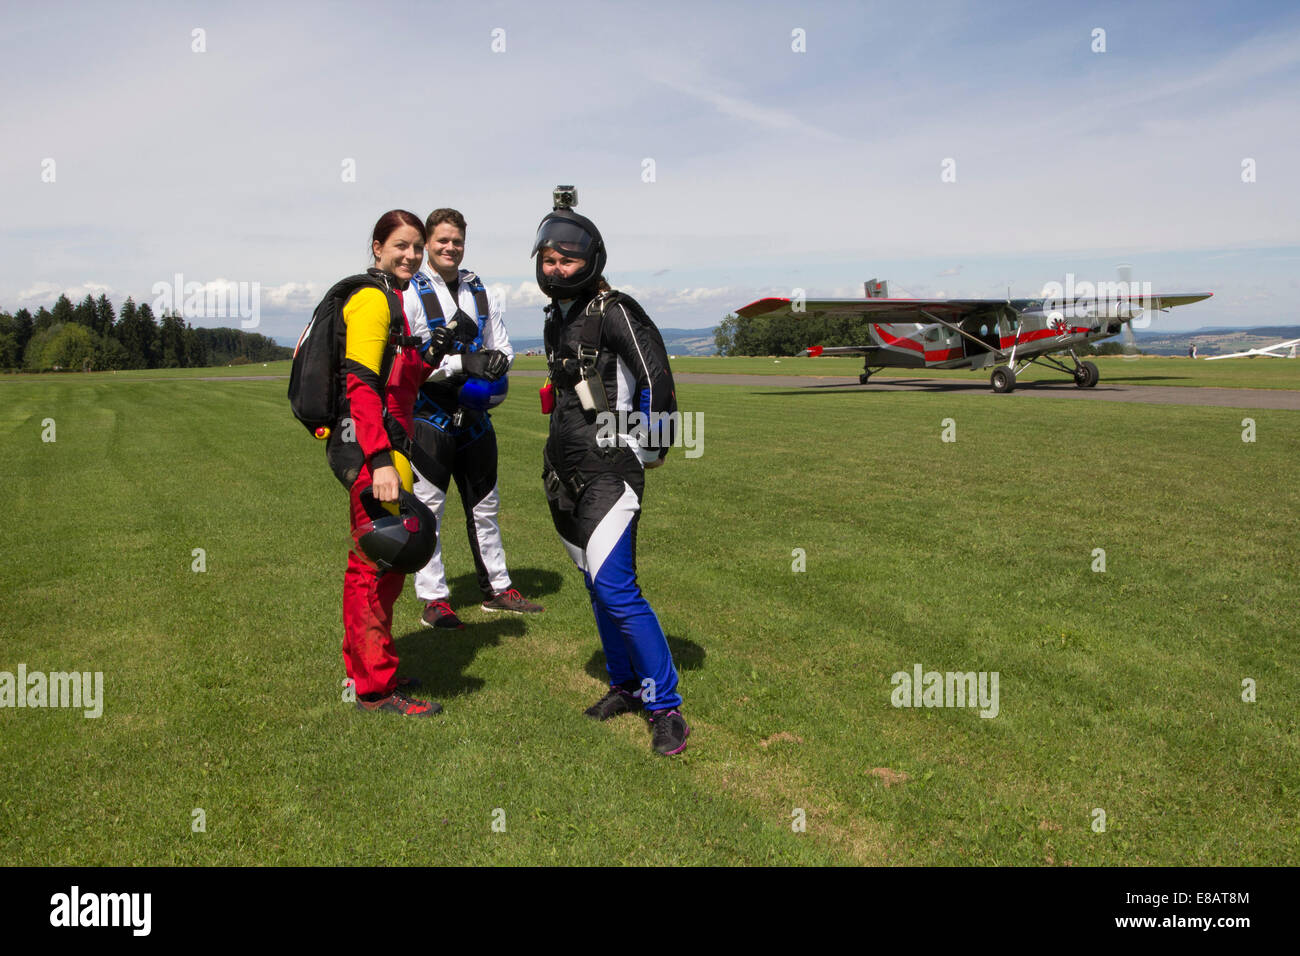 Portrait de l'équipe de parachutisme se préparent à voler, Buttwil, Luzern, Suisse Banque D'Images